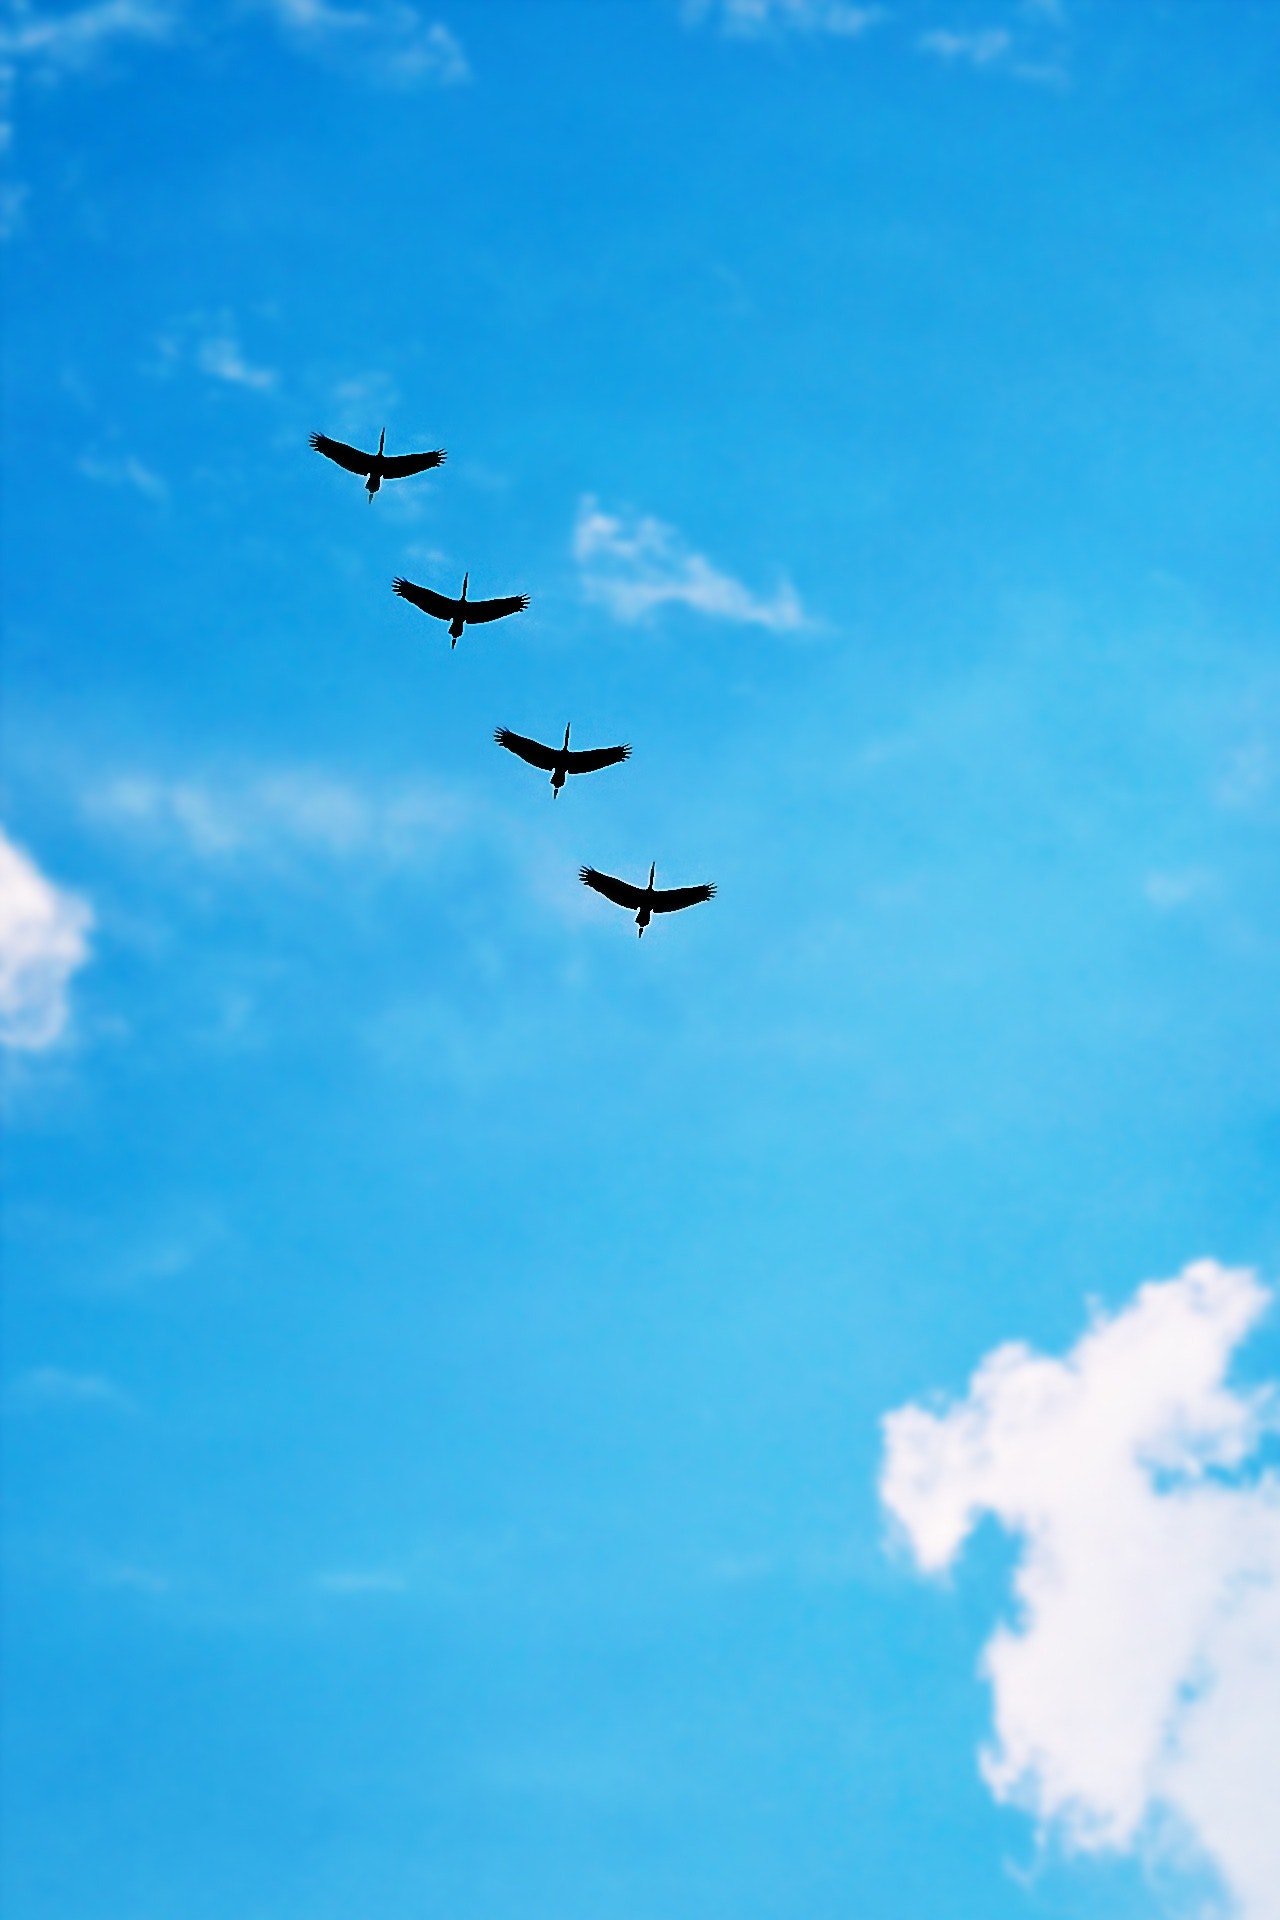 Black bird under blue calm sky during daytime photo